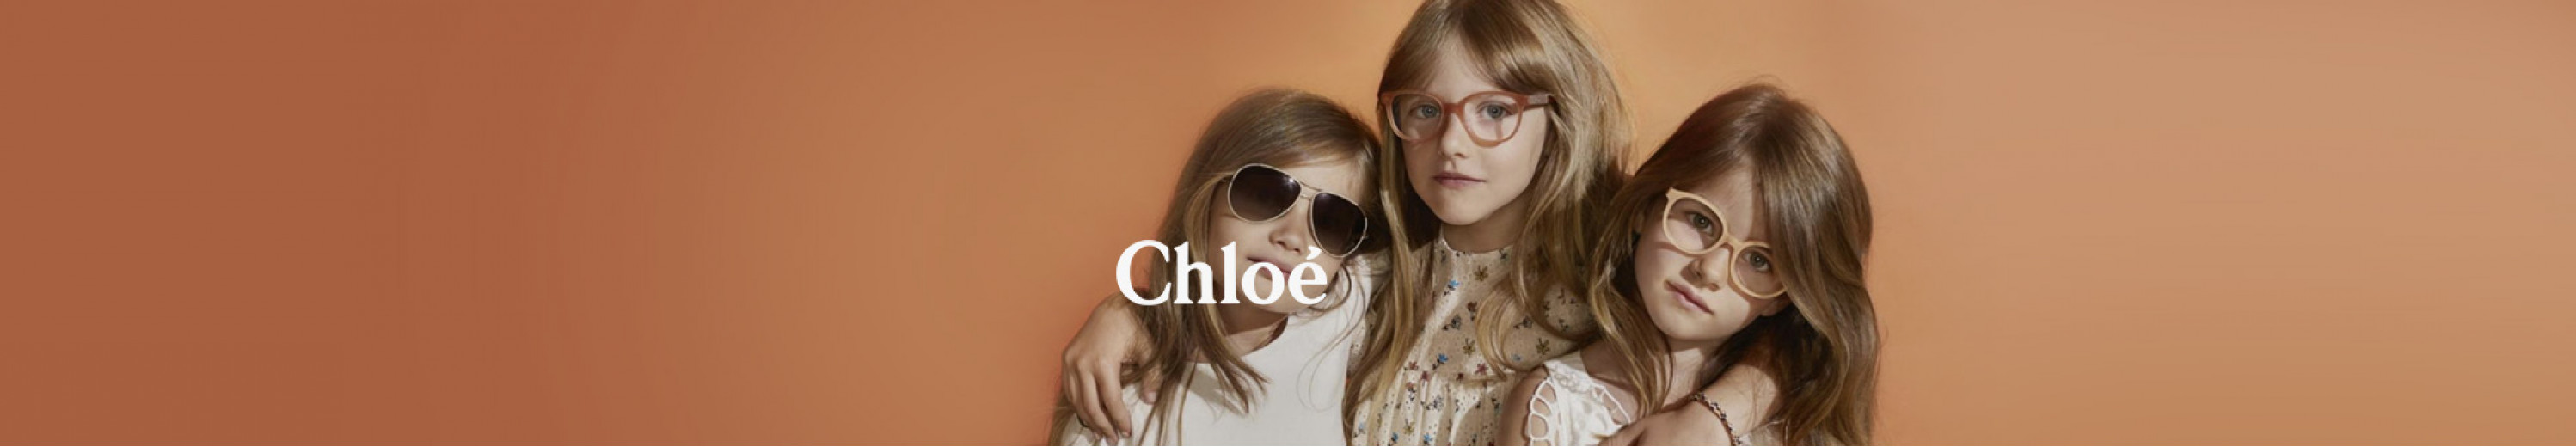 Chloé Eyeglasses for Kids